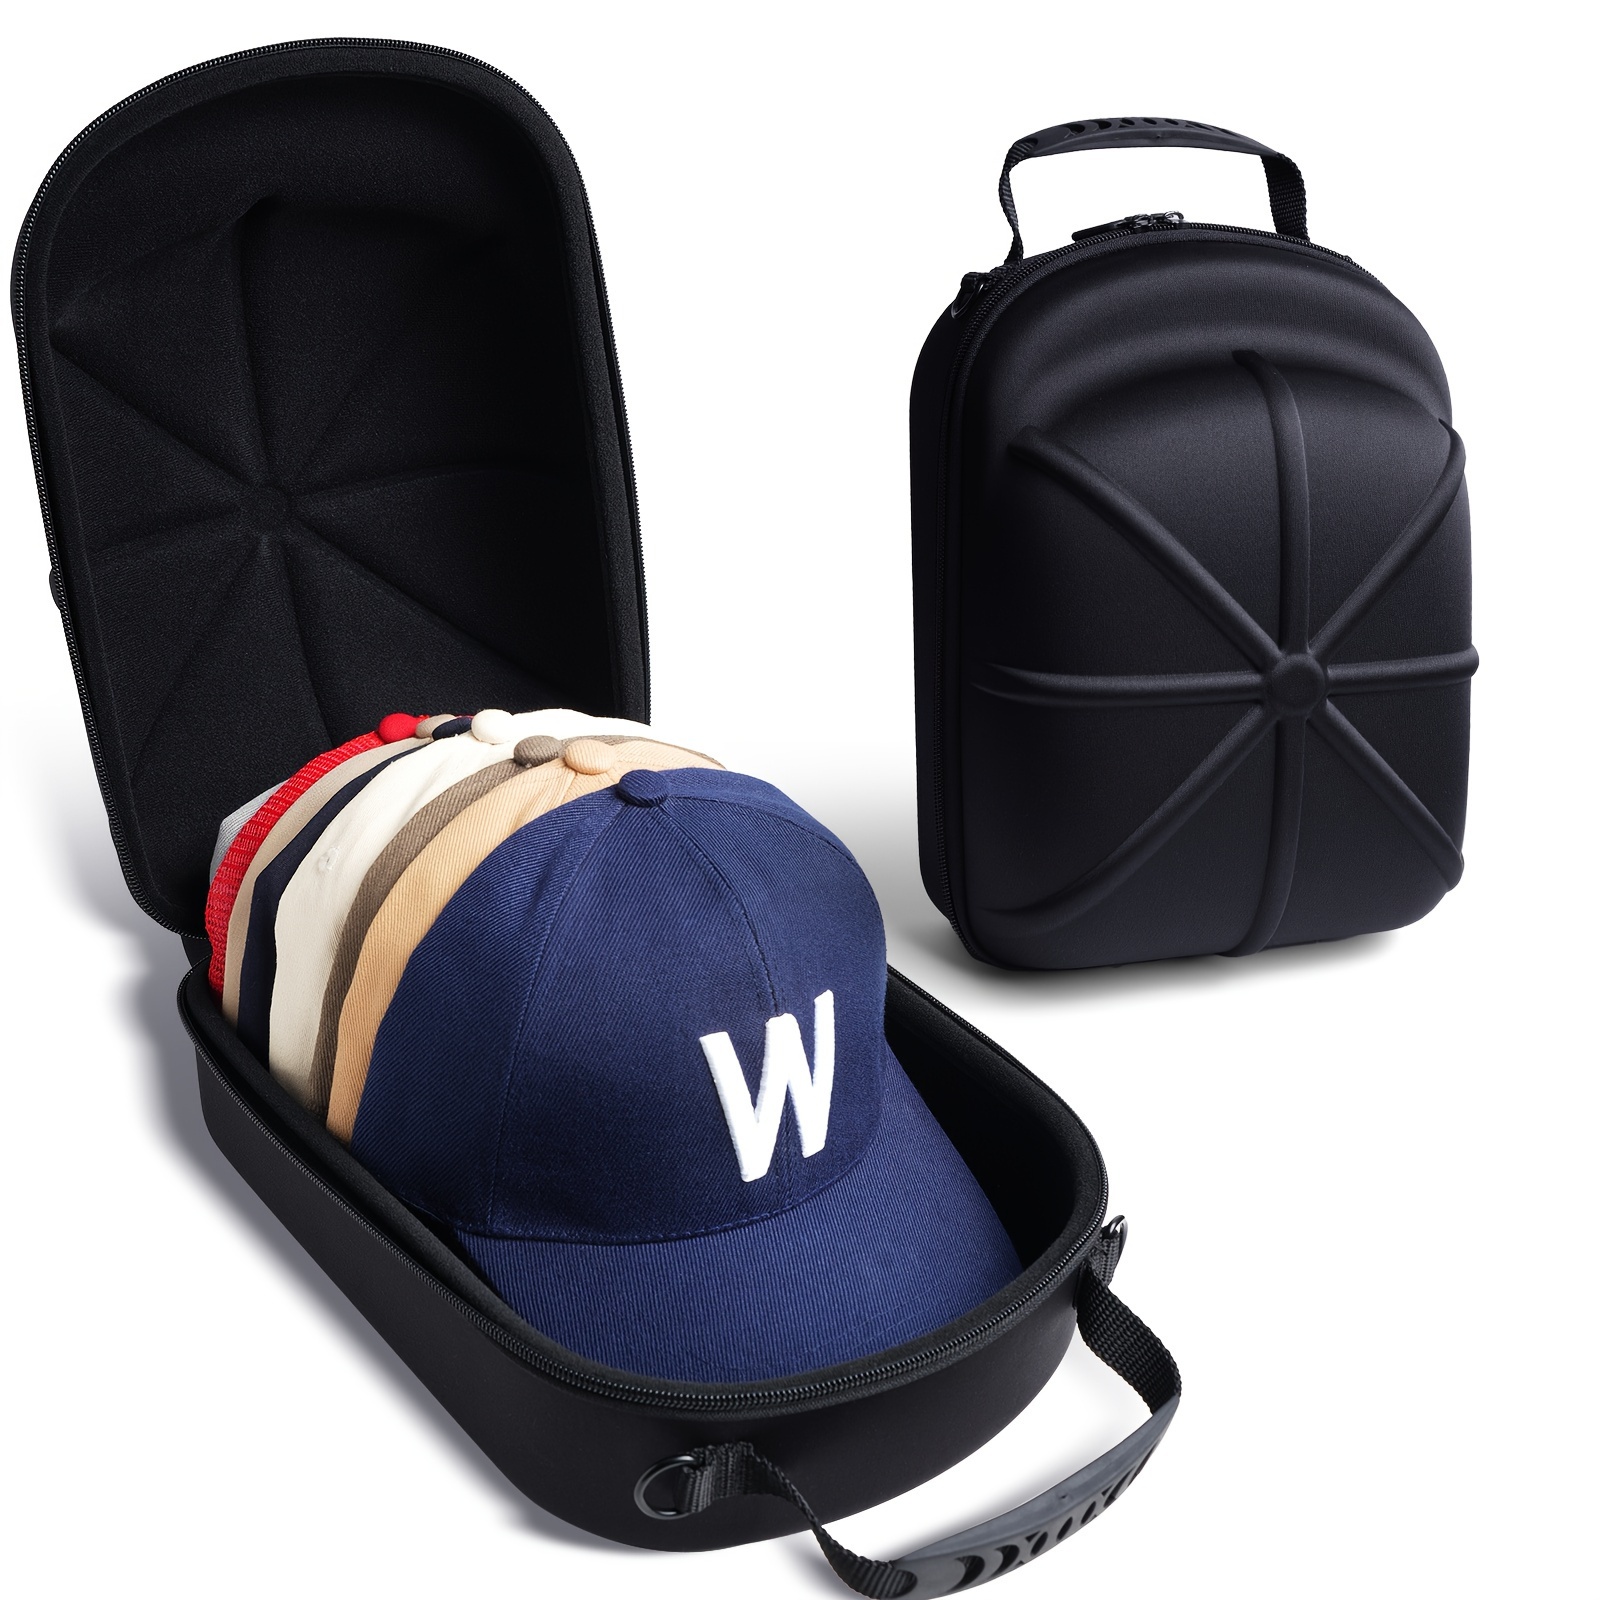 

1pc Housse rigide pour casquette, étui de rangement en tissu pour casquettes de baseball avec poignée, anti-écrasement, étanche à la poussière, organisateur pour les voyages et la maison